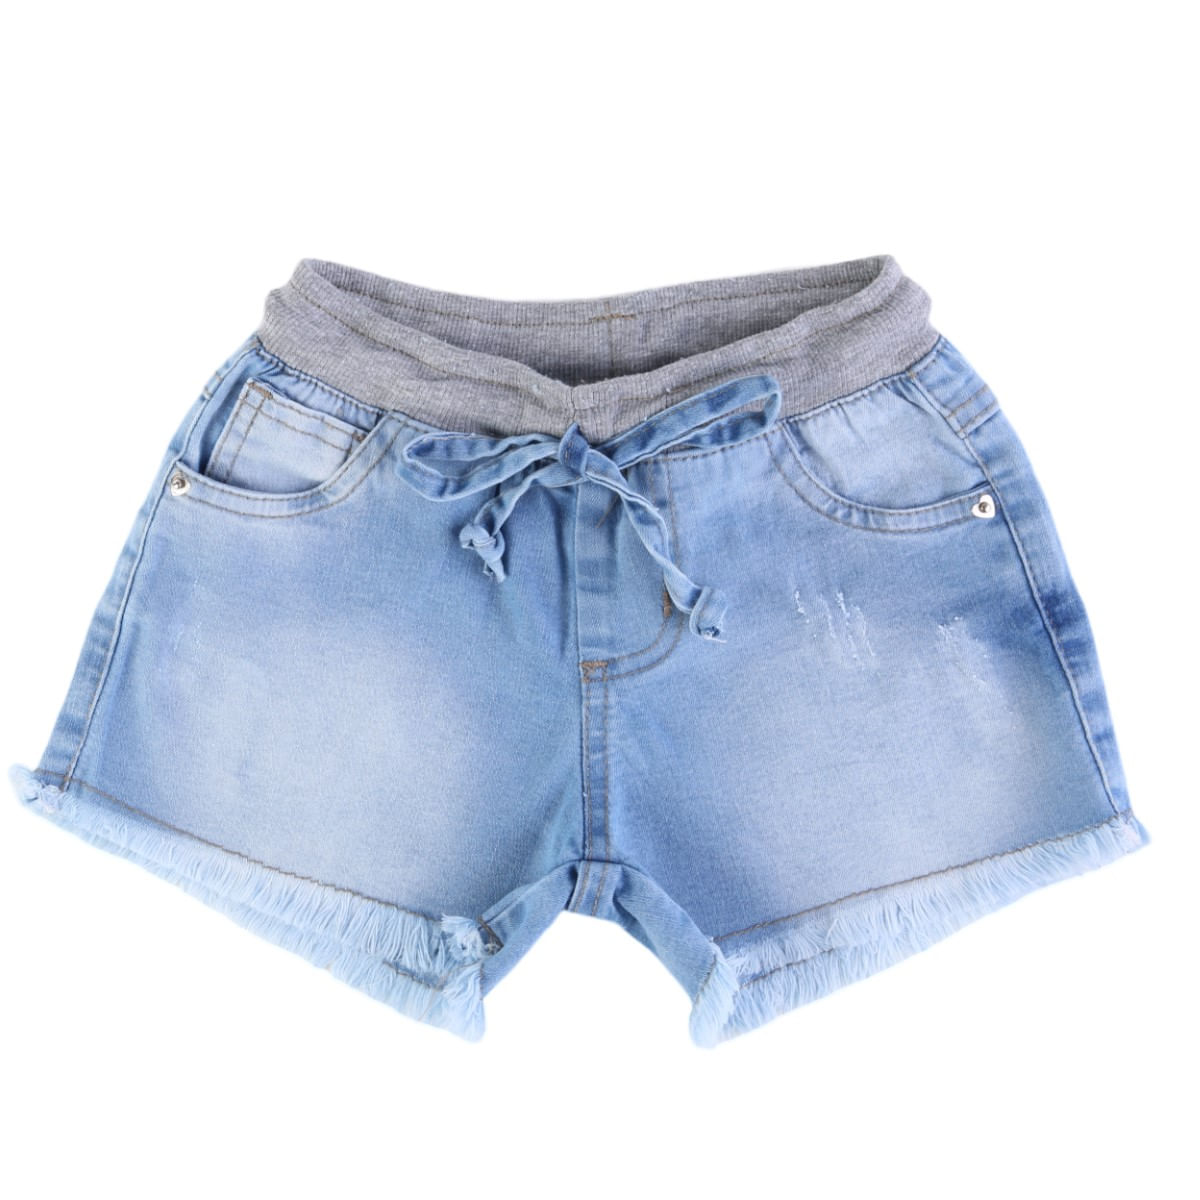 Short Color Mini Em Jeans Com Barra Desfiada Infantil - kookabu